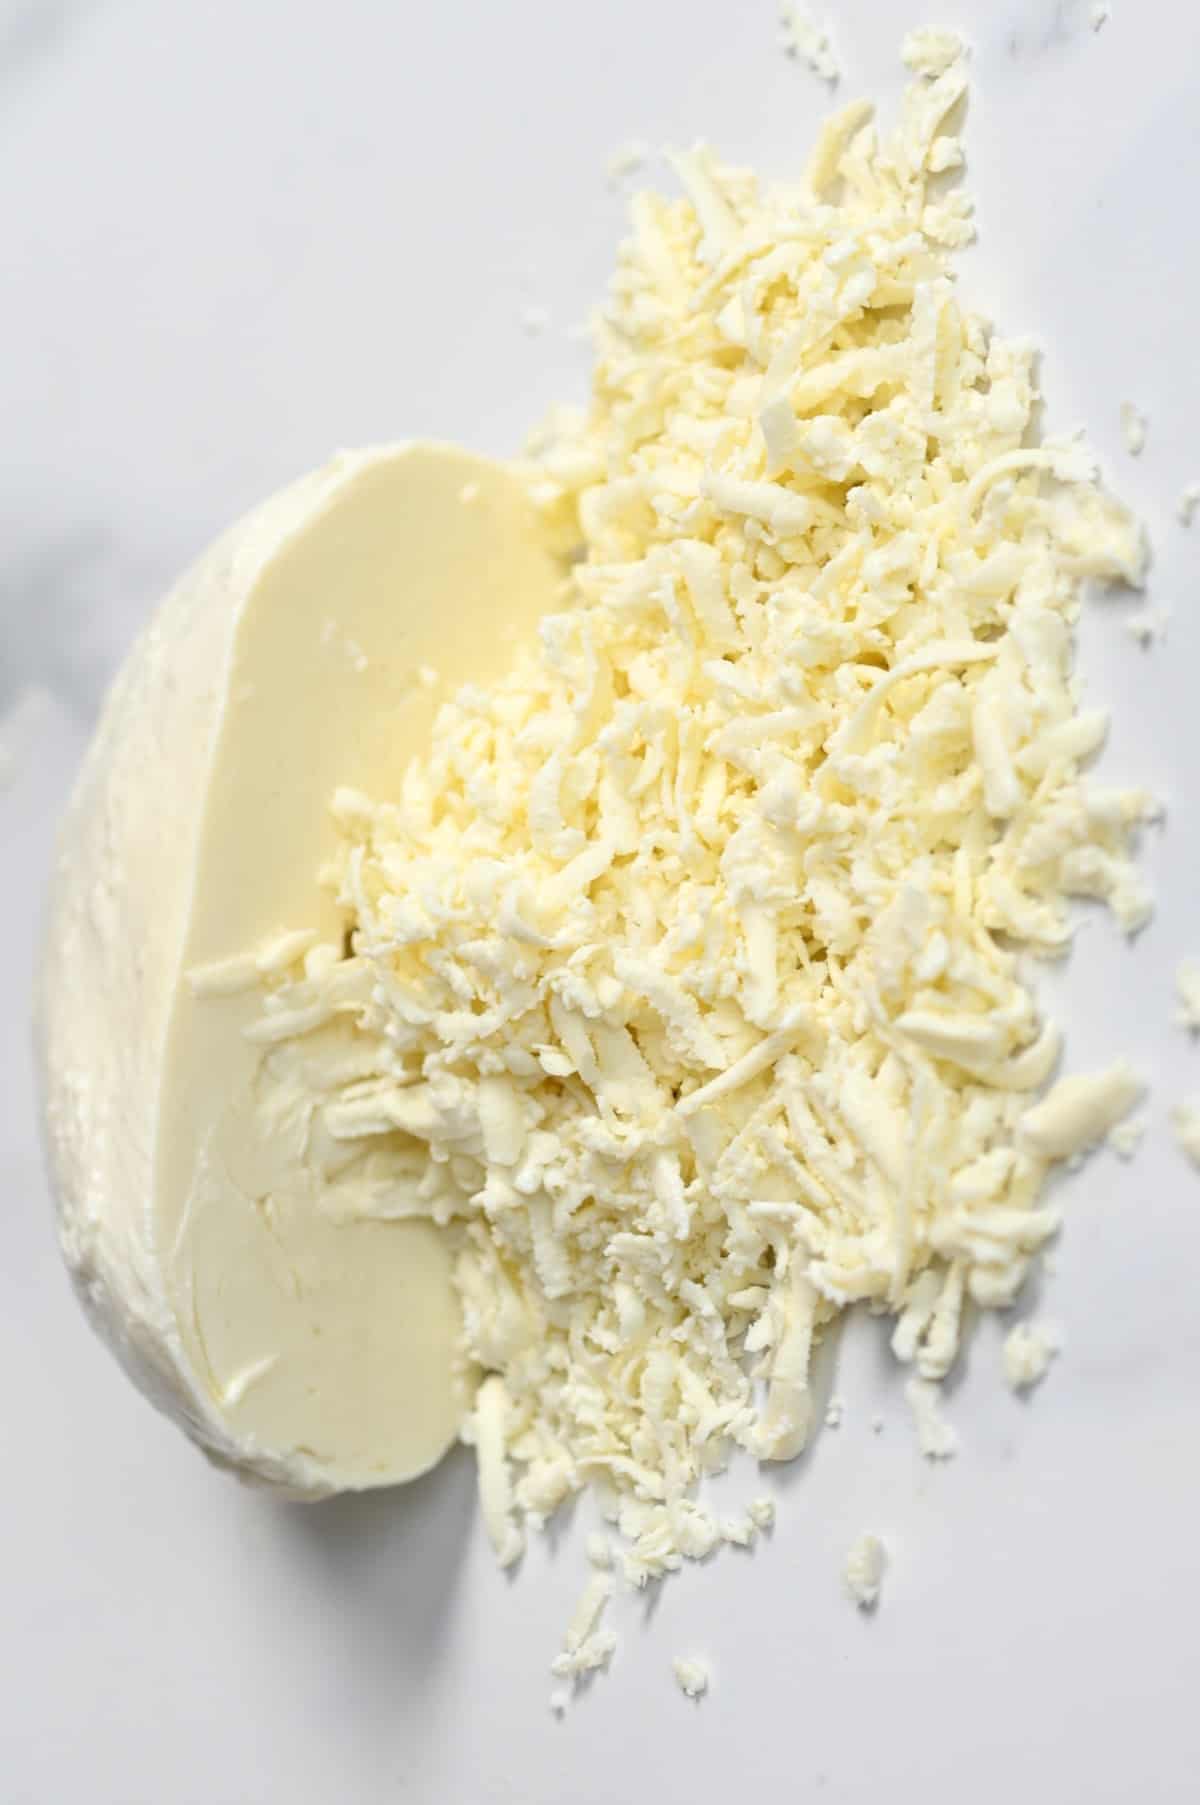 Half-grated homemade mozzarella cheese